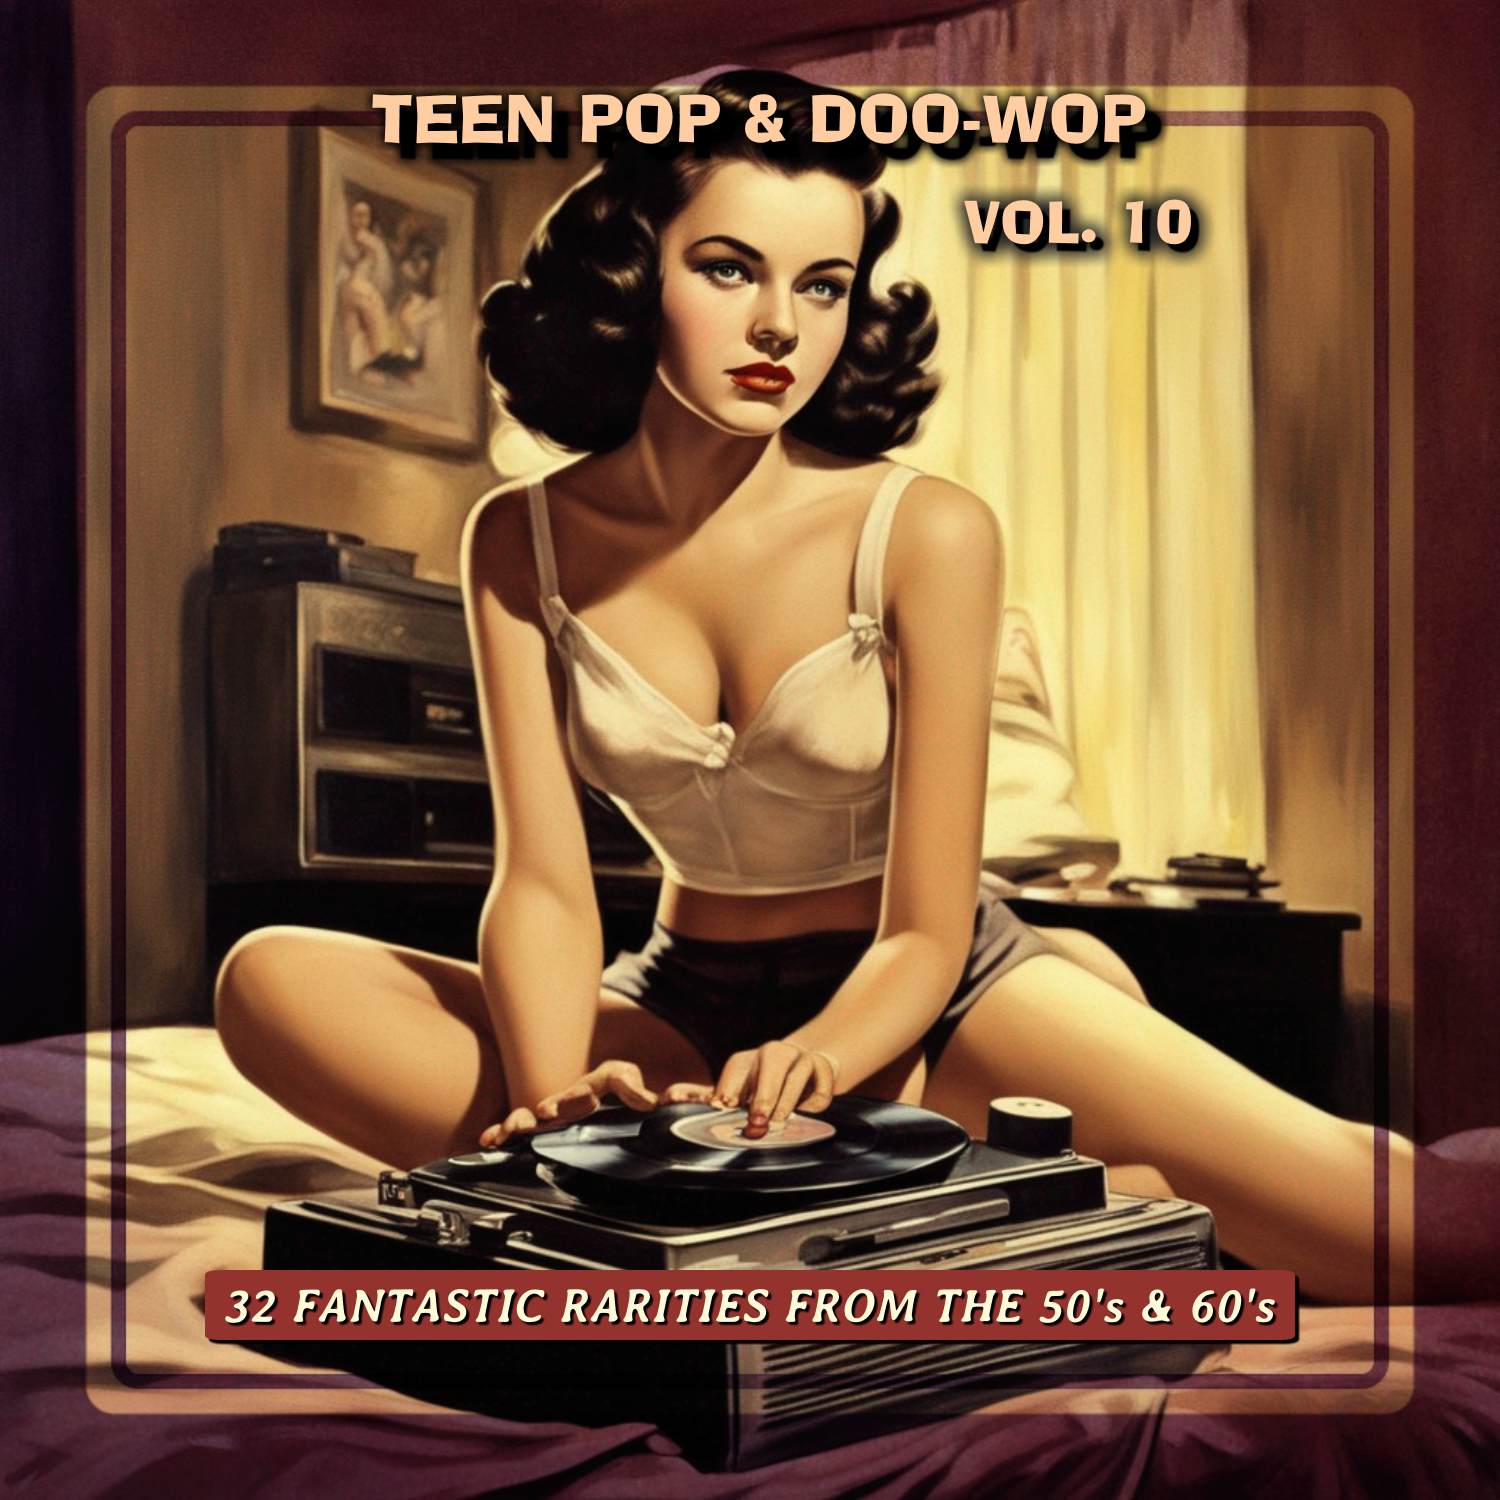 TeenPop & Doo-Wop Volume 10